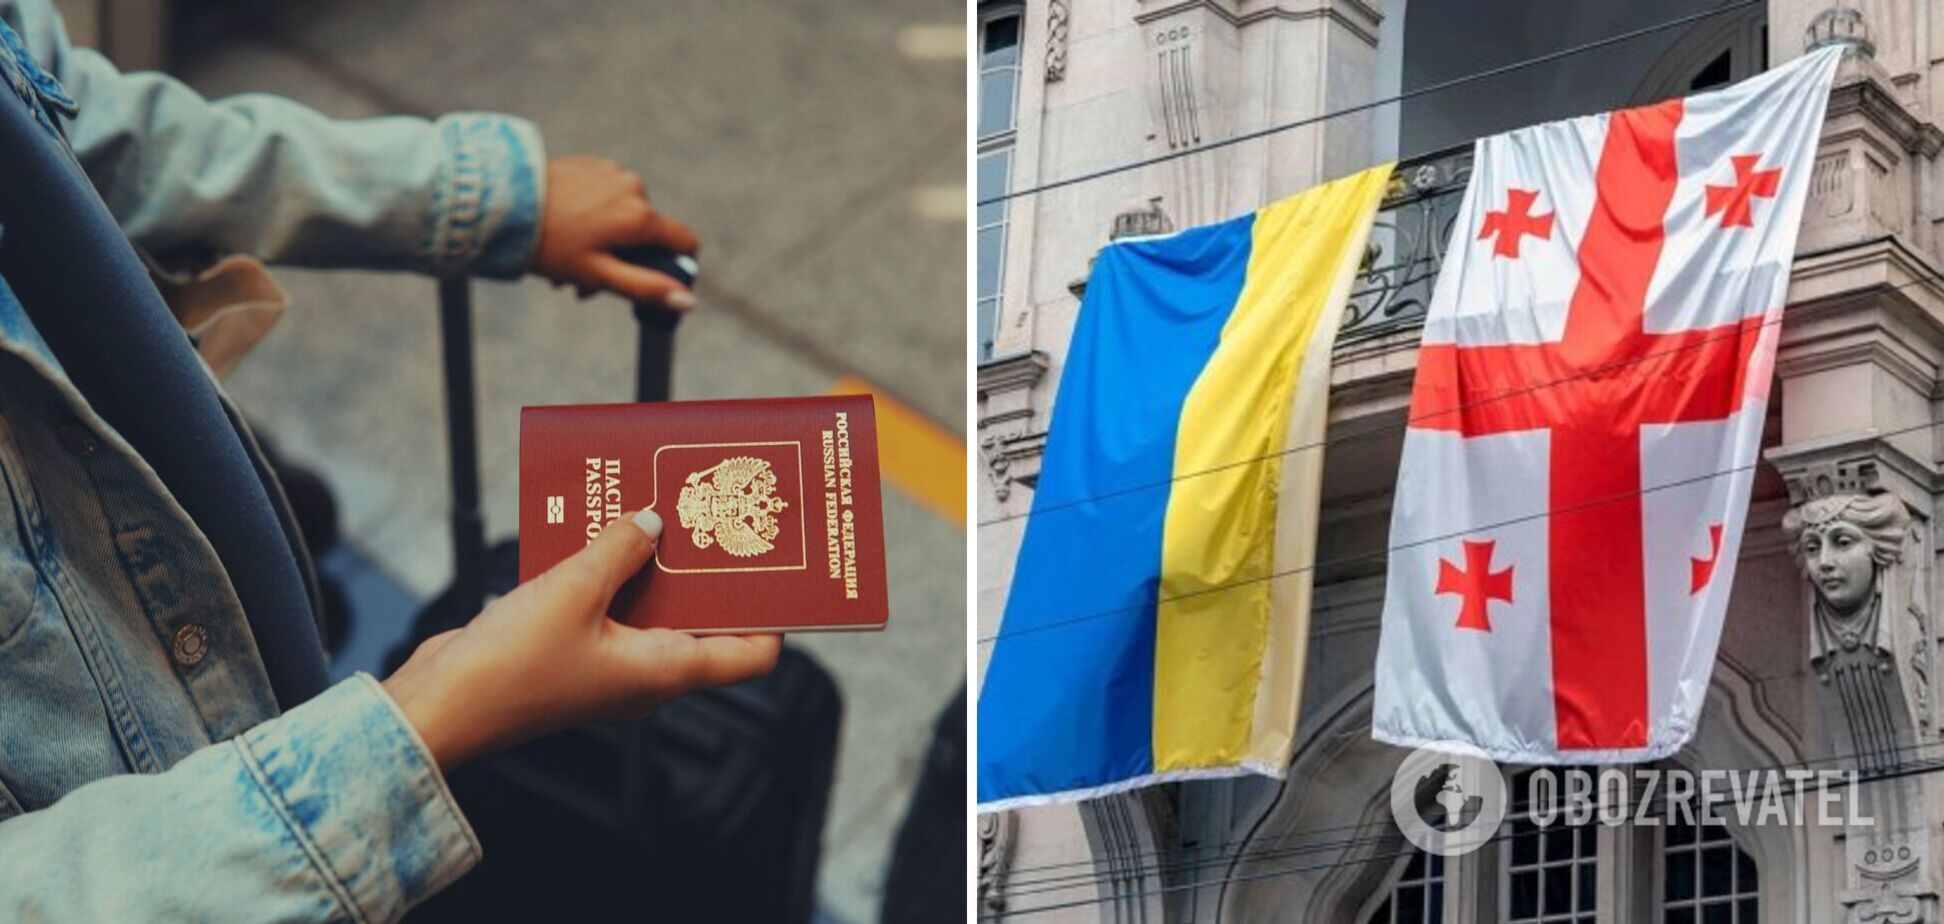 'Это Украина или Грузия?!' Российская туристка вскипела от злости после поездки в Тбилиси